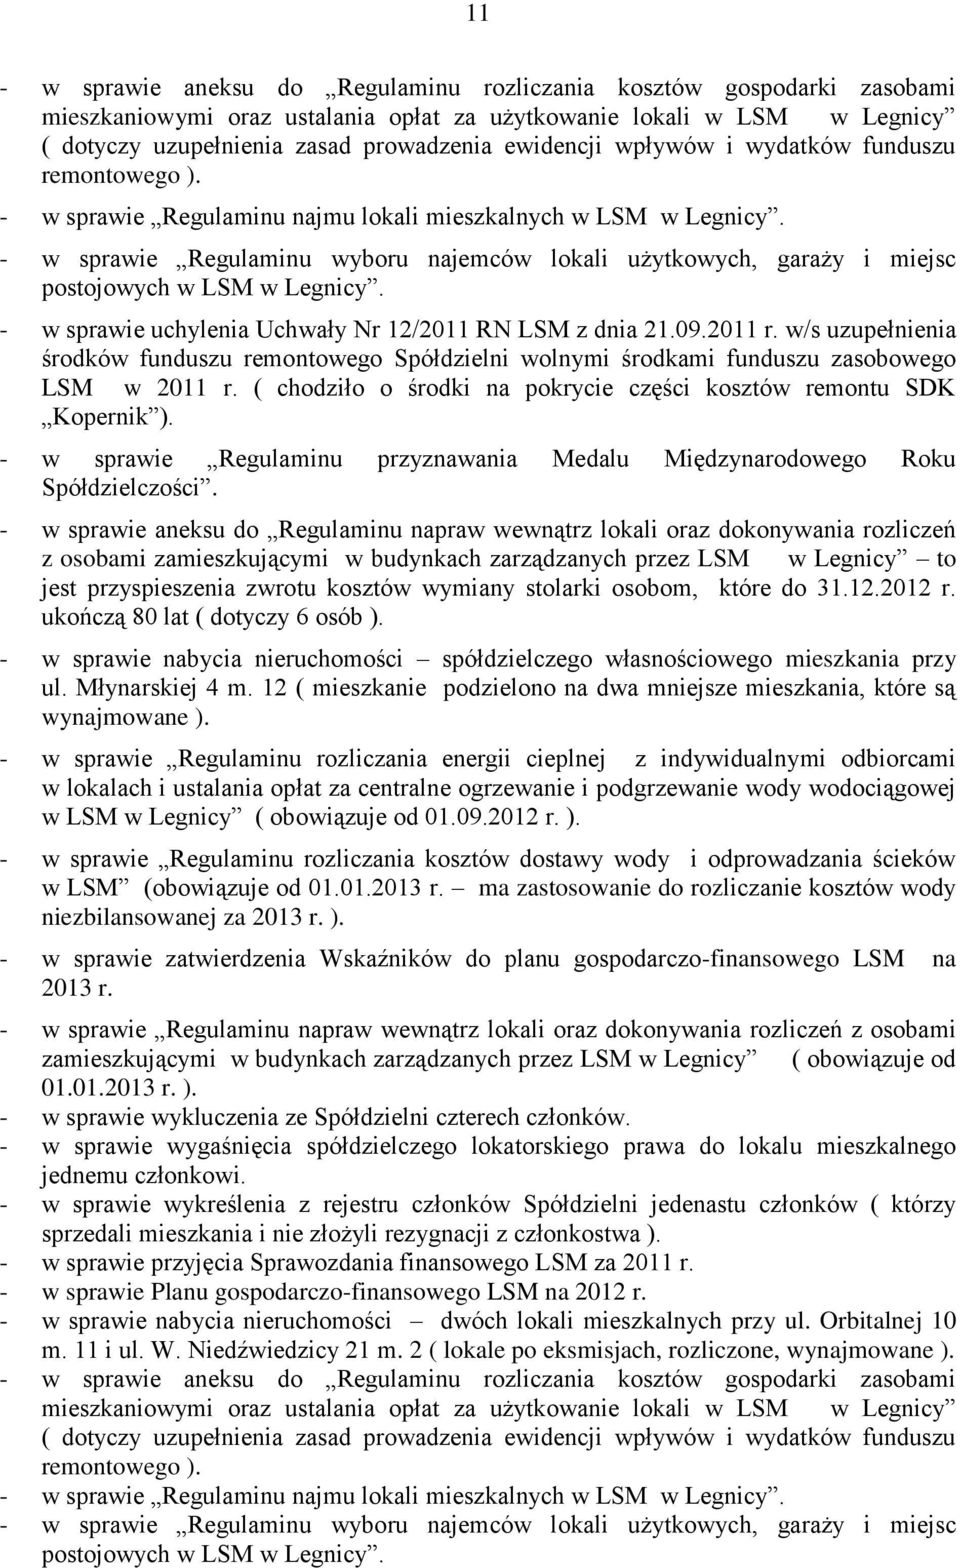 - w sprawie Regulaminu wyboru najemców lokali użytkowych, garaży i miejsc postojowych w LSM w Legnicy. - w sprawie uchylenia Uchwały Nr 12/2011 RN LSM z dnia 21.09.2011 r.